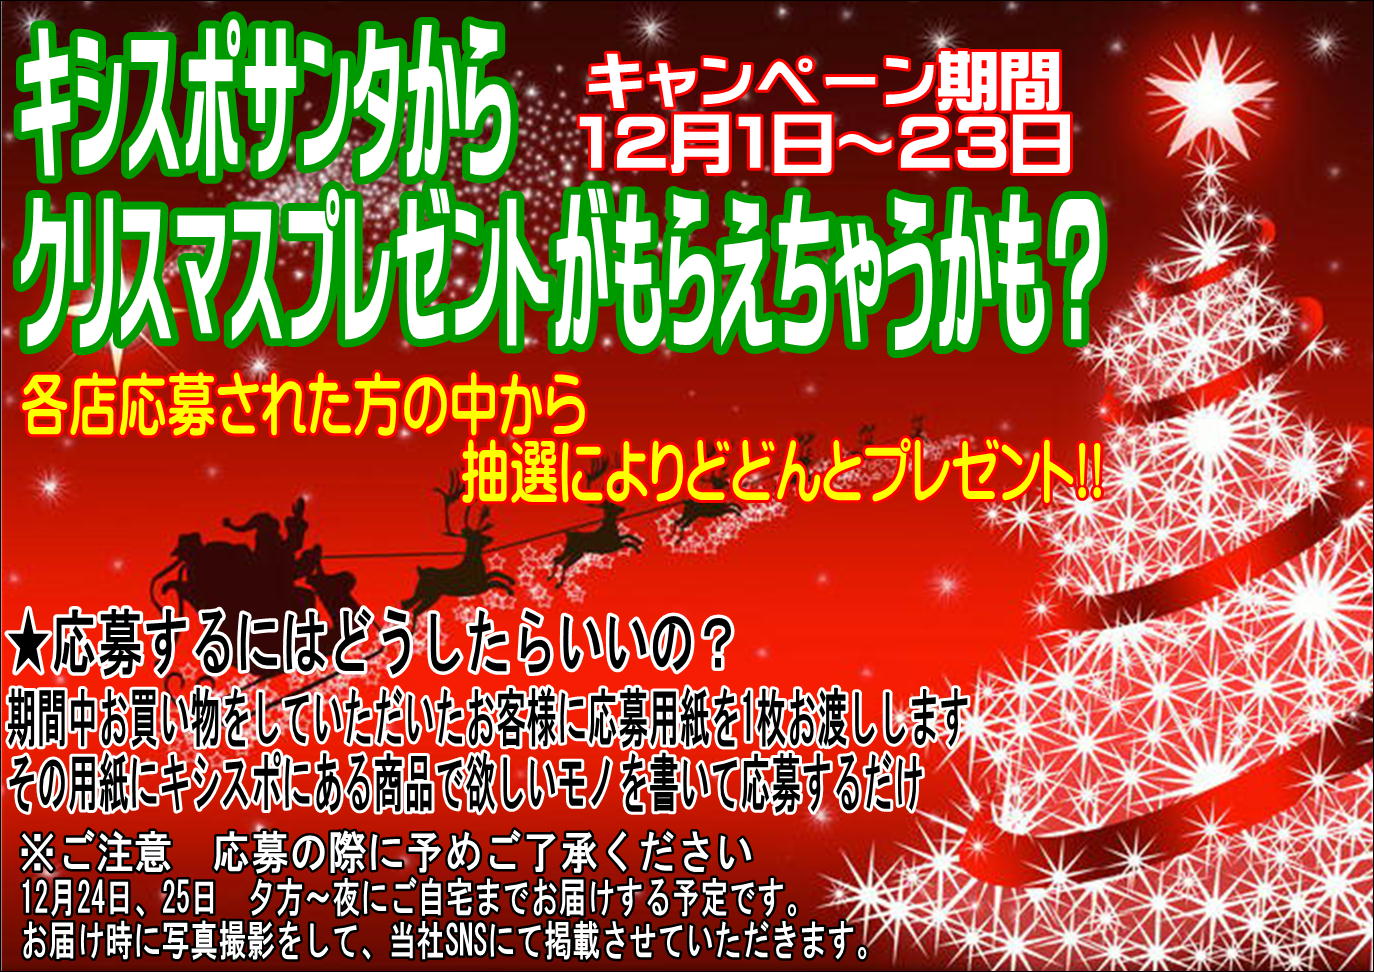 【クリスマスキャンペーン開催〜12/23】